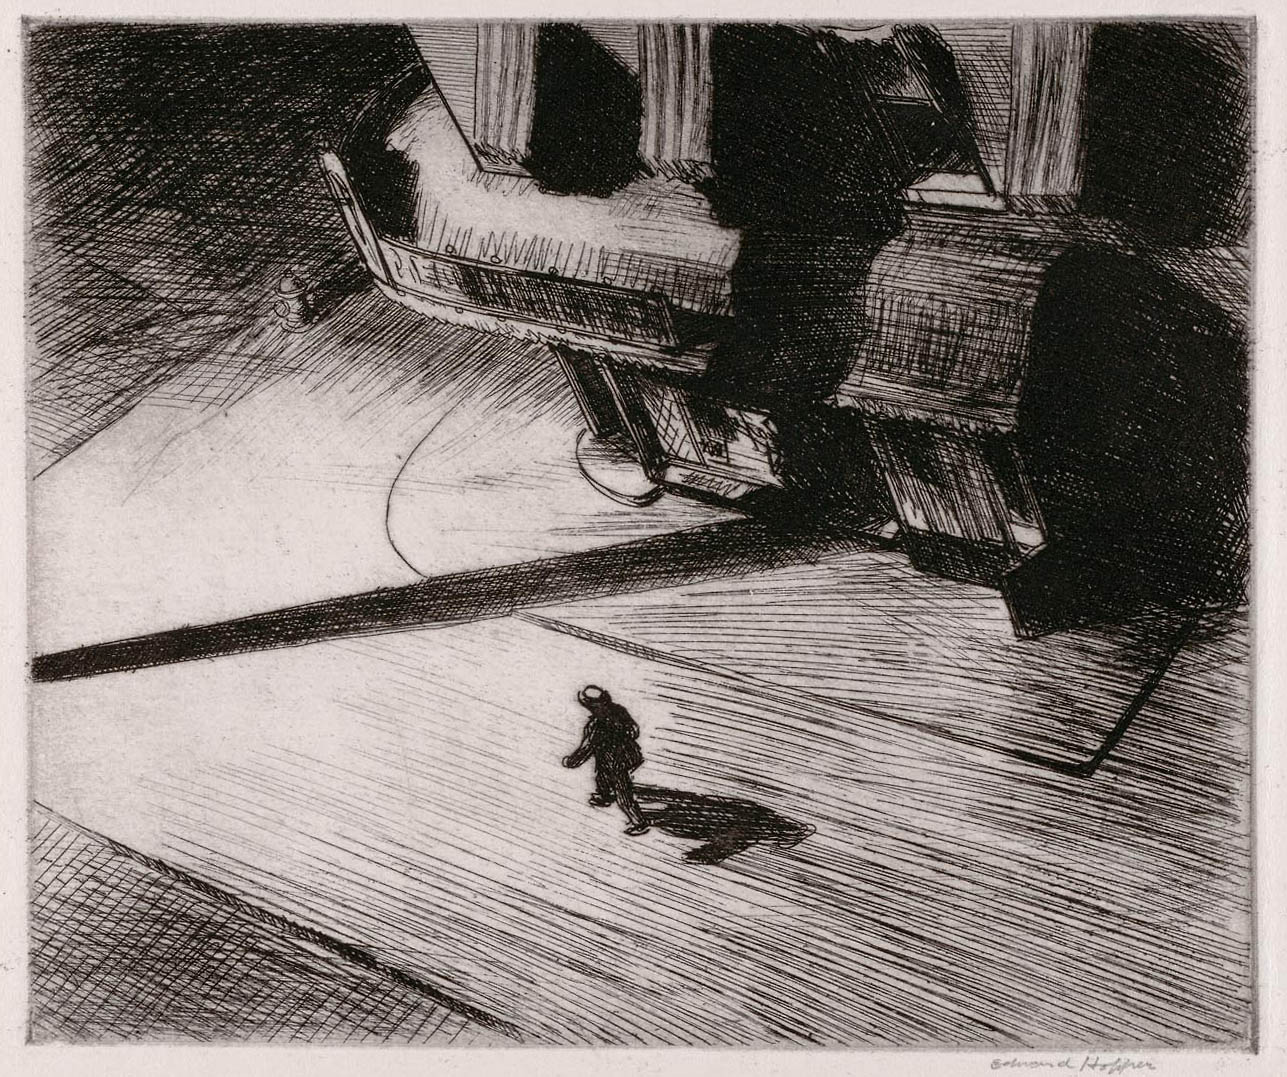 Hopper S Spooky 1921 Etching Night Shadows - Edward Hopper Etching Night Shadows - HD Wallpaper 